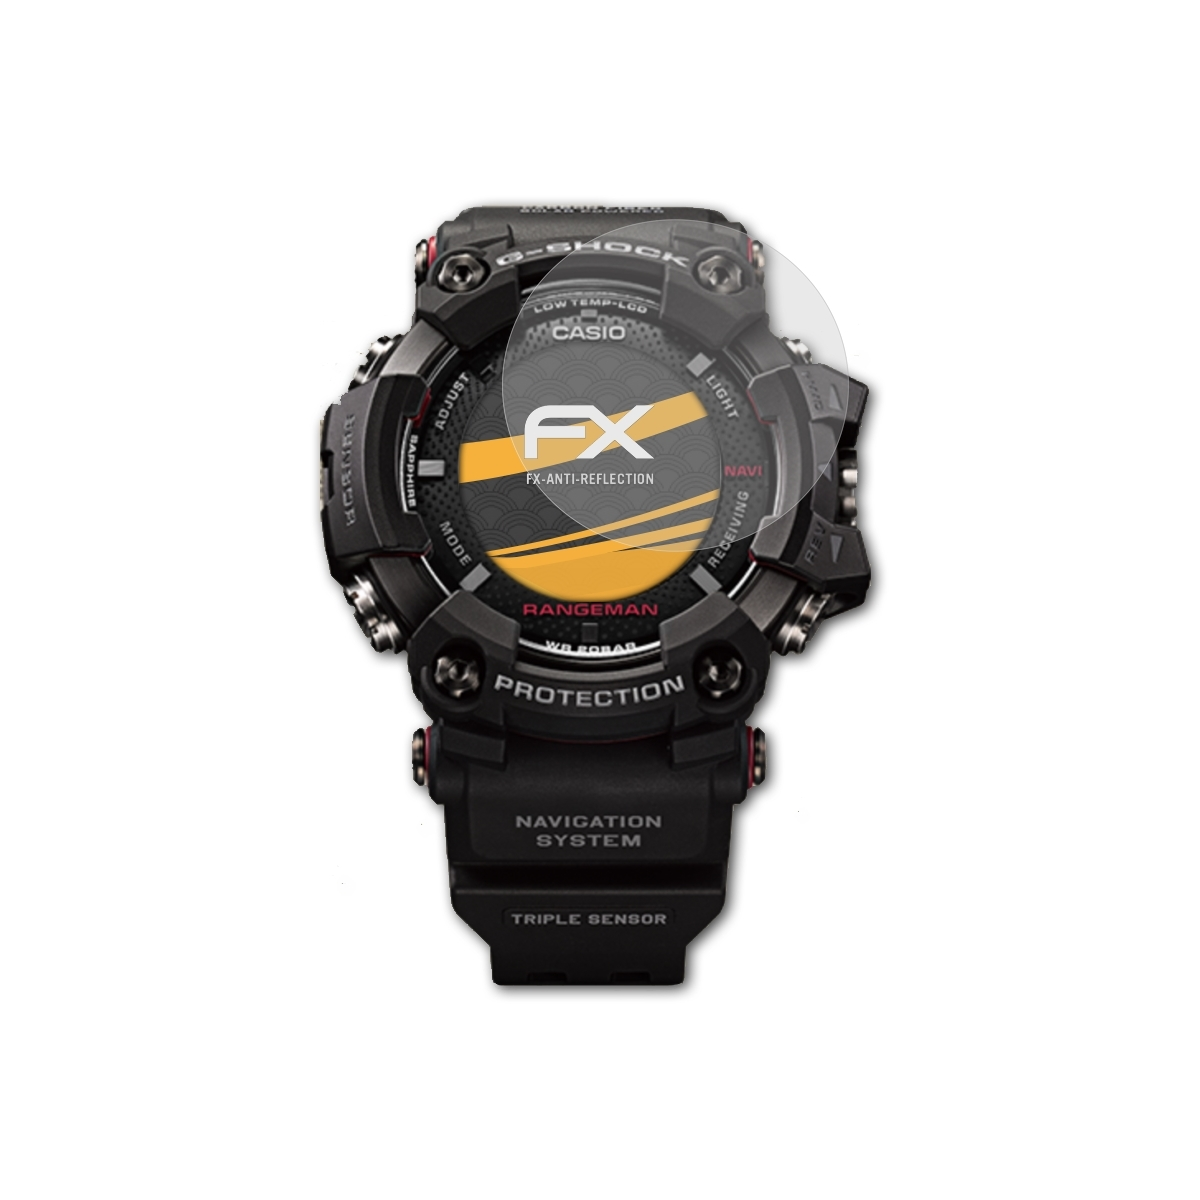 ATFOLIX 3x FX-Antireflex GPR-B1000-1) Casio Displayschutz(für